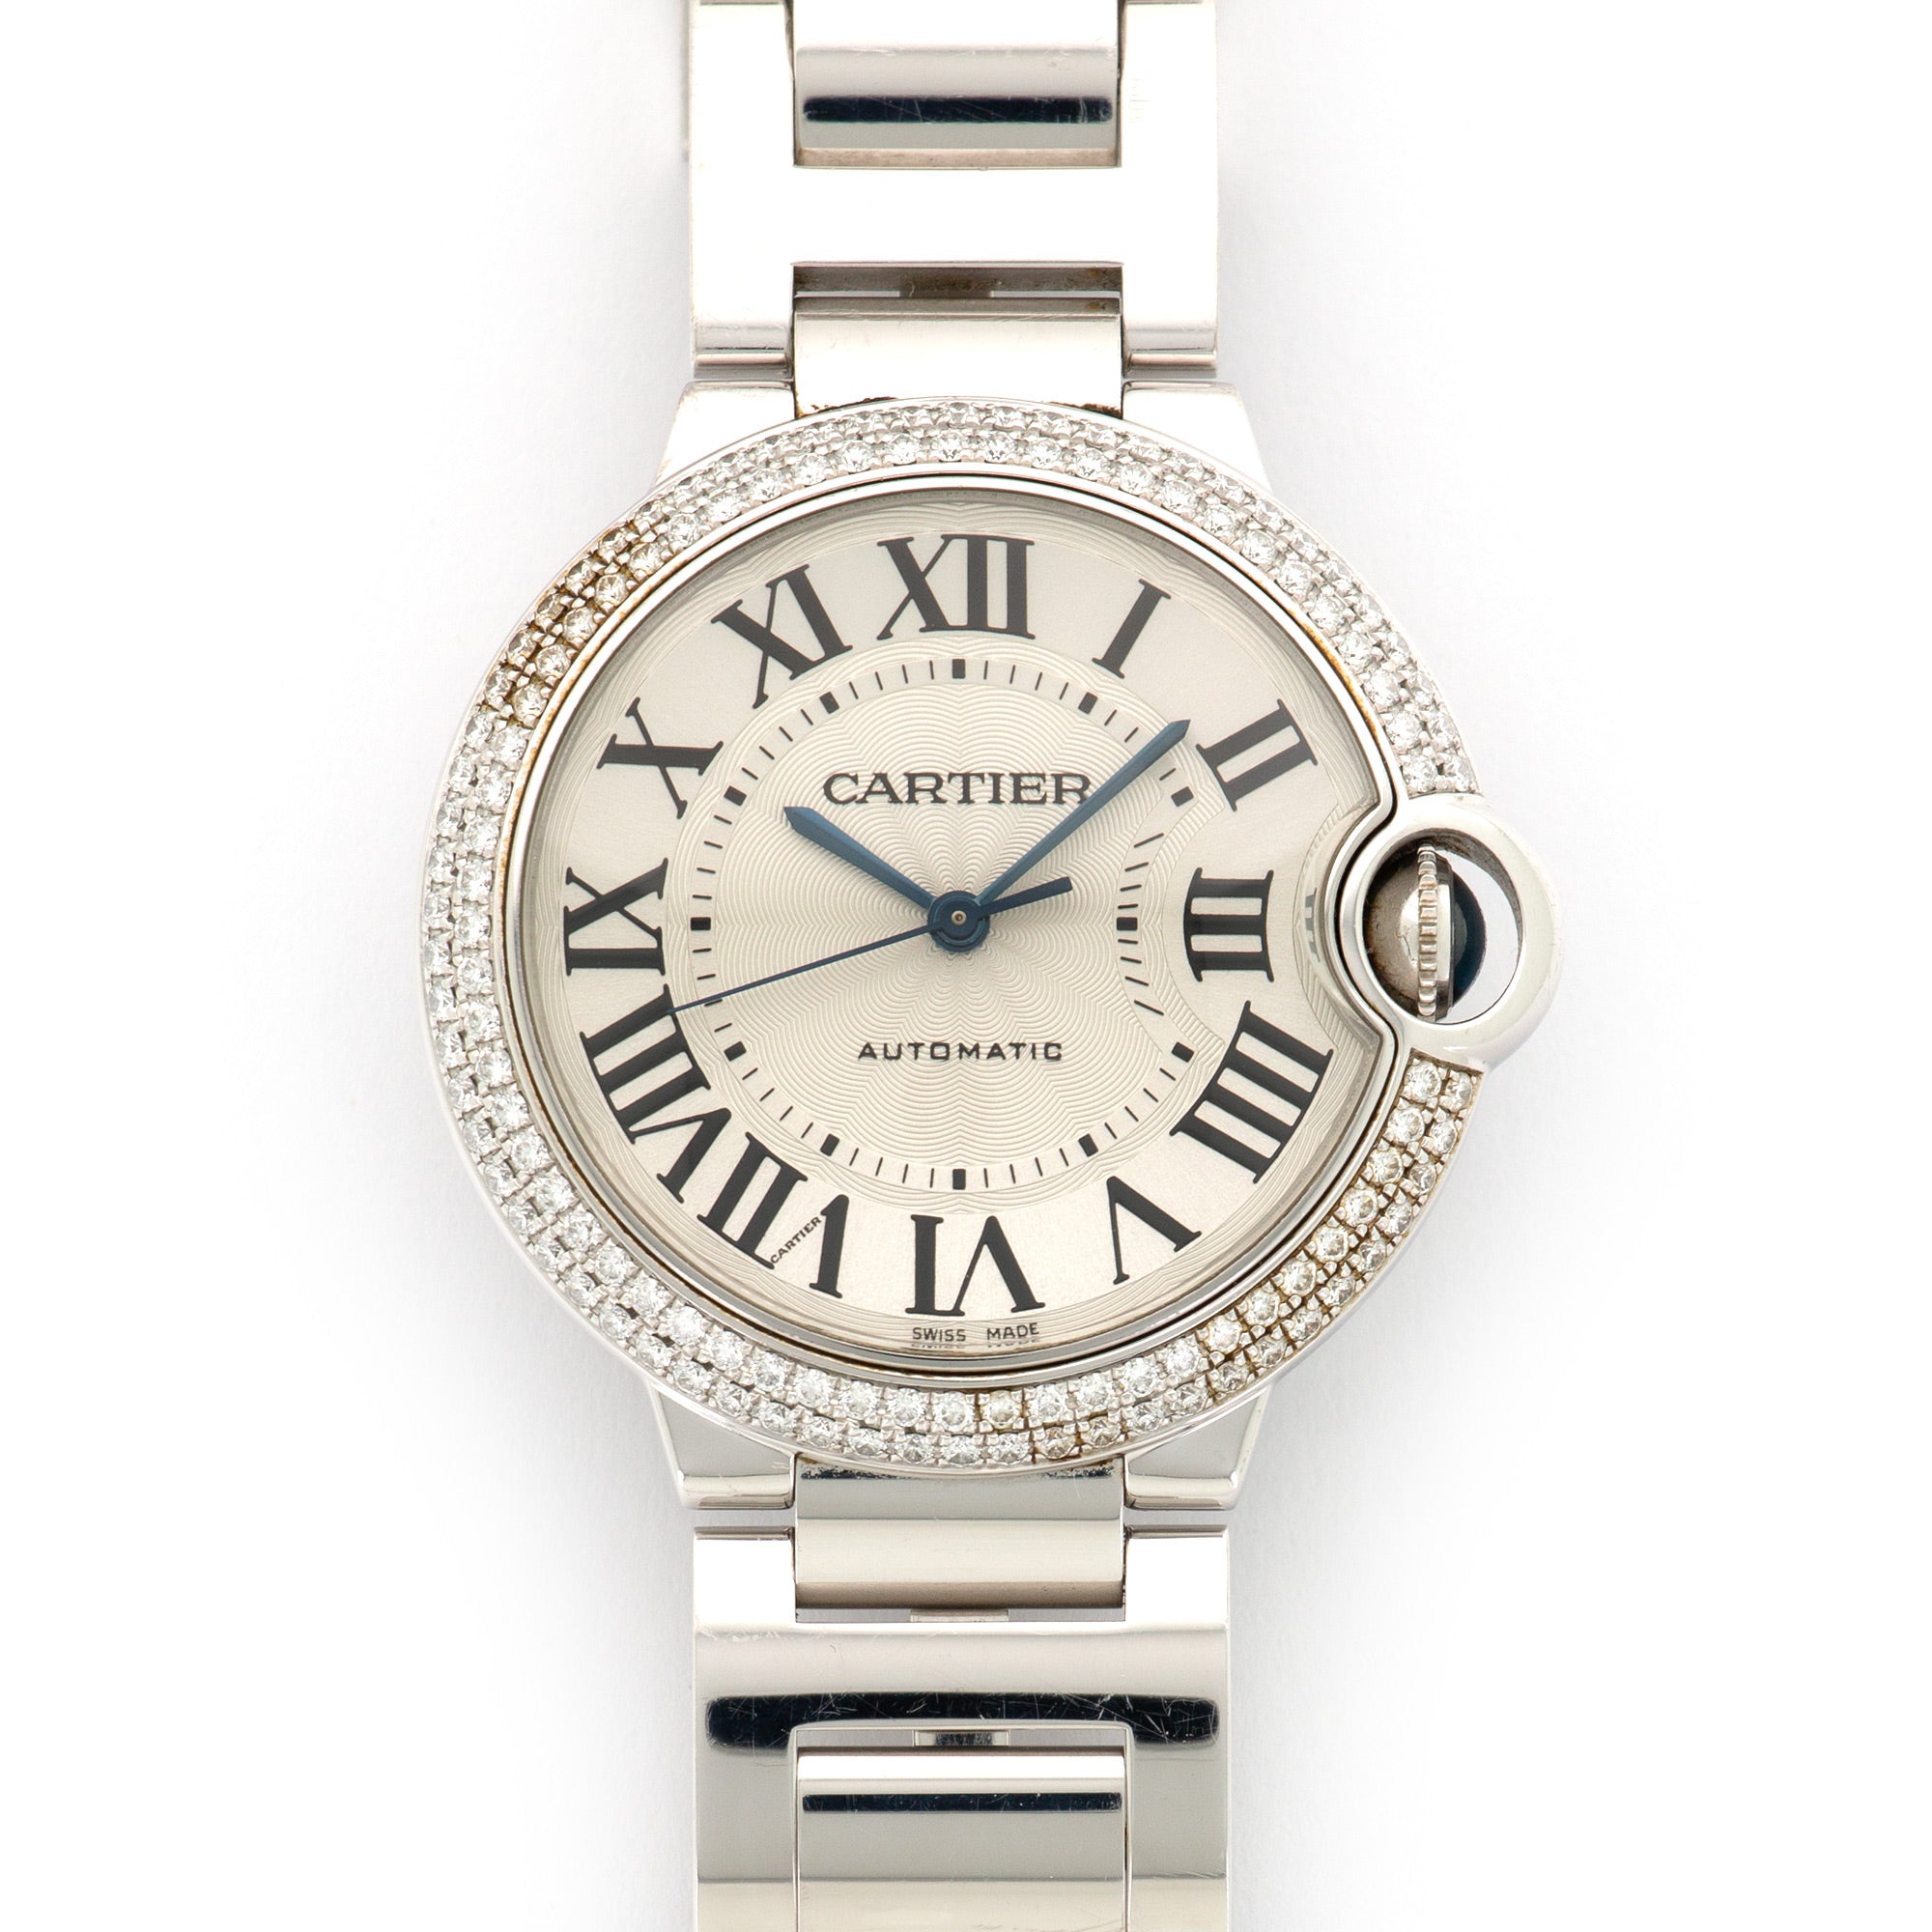 Cartier - Cartier White Gold Ballon Bleu Diamond Watch - The Keystone Watches